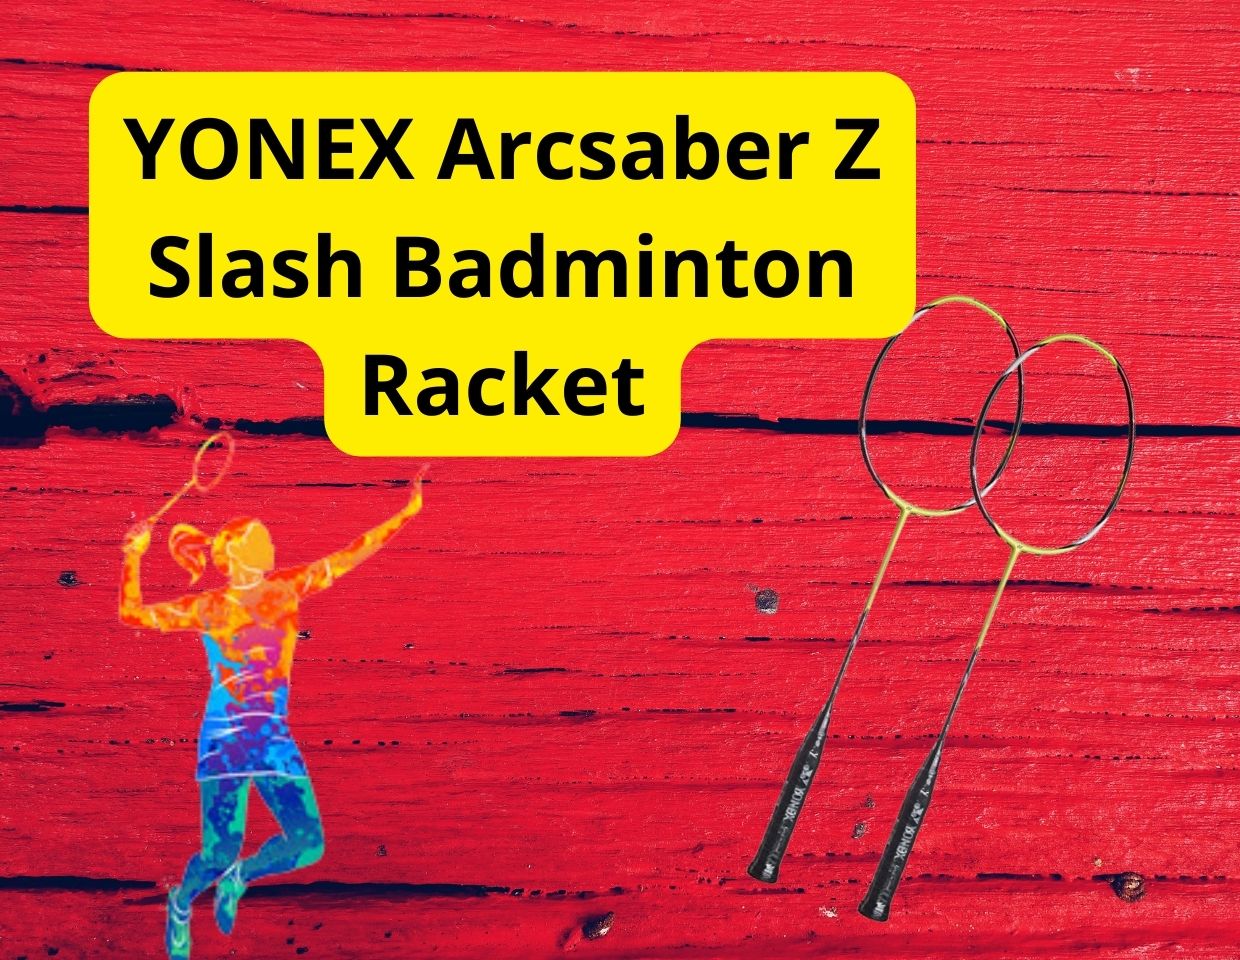 YONEX Arcsaber Z Slash Badminton Racket Review